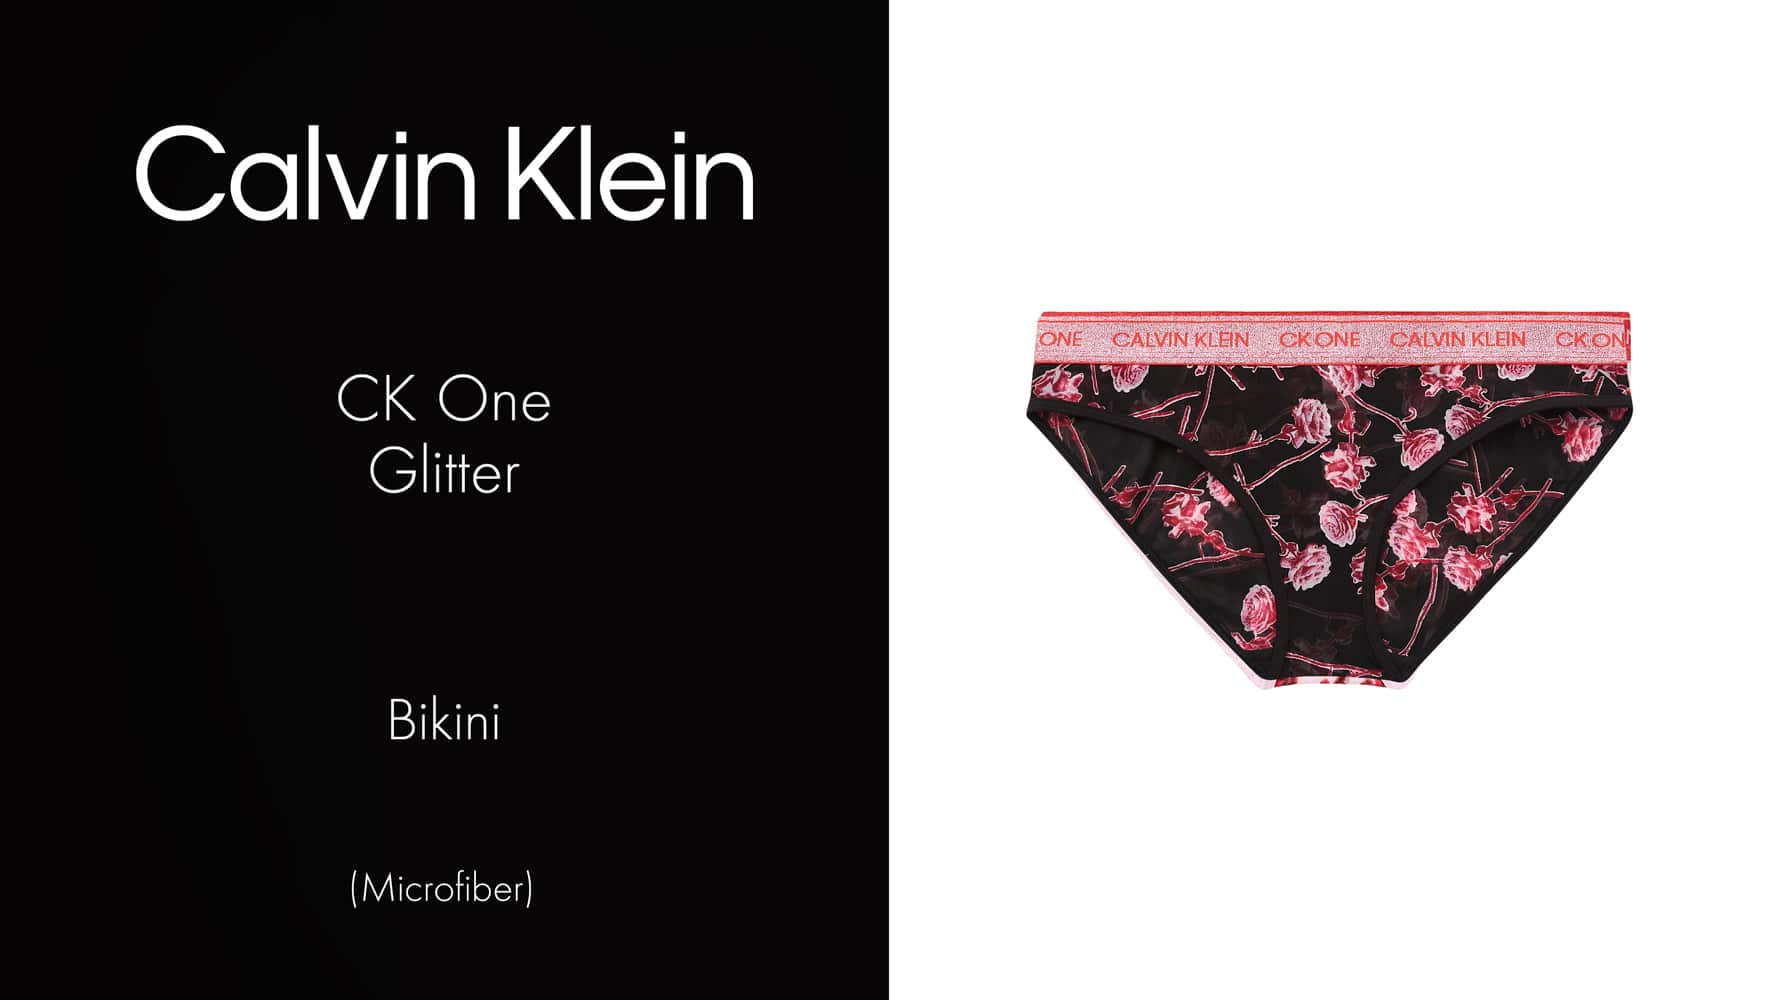 Bikini - CK One